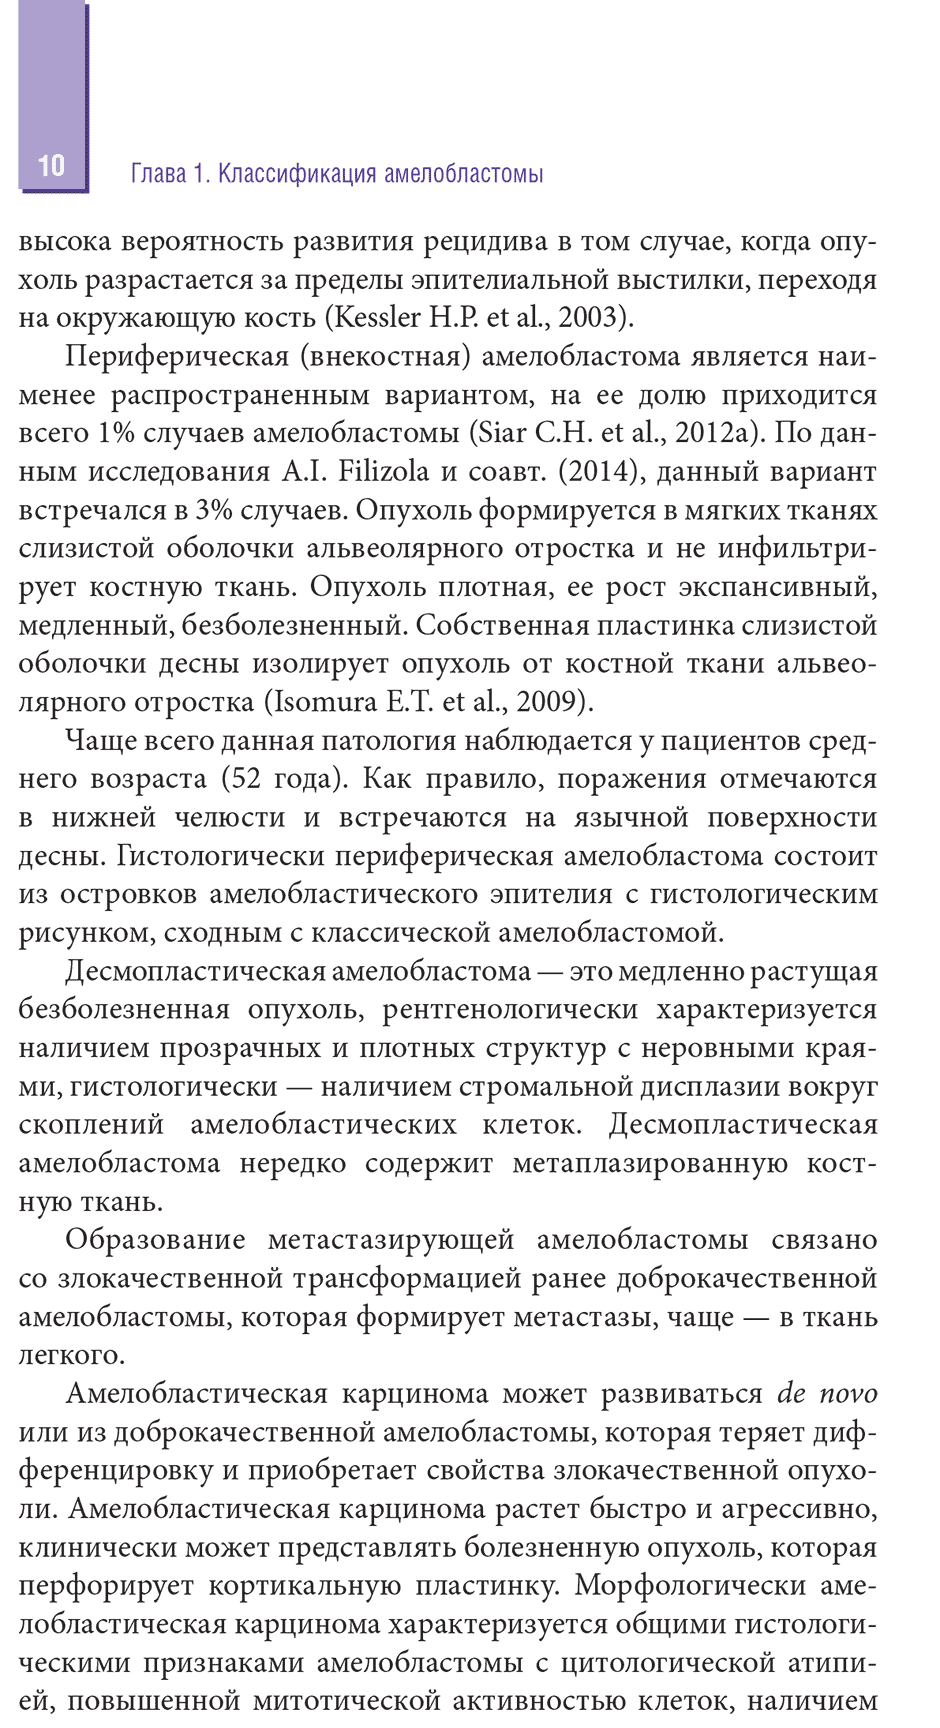 Пример страницы из книги "Амелобластома: современная диагностика, клиническая картина и лечение" - Бабиченко И. И.